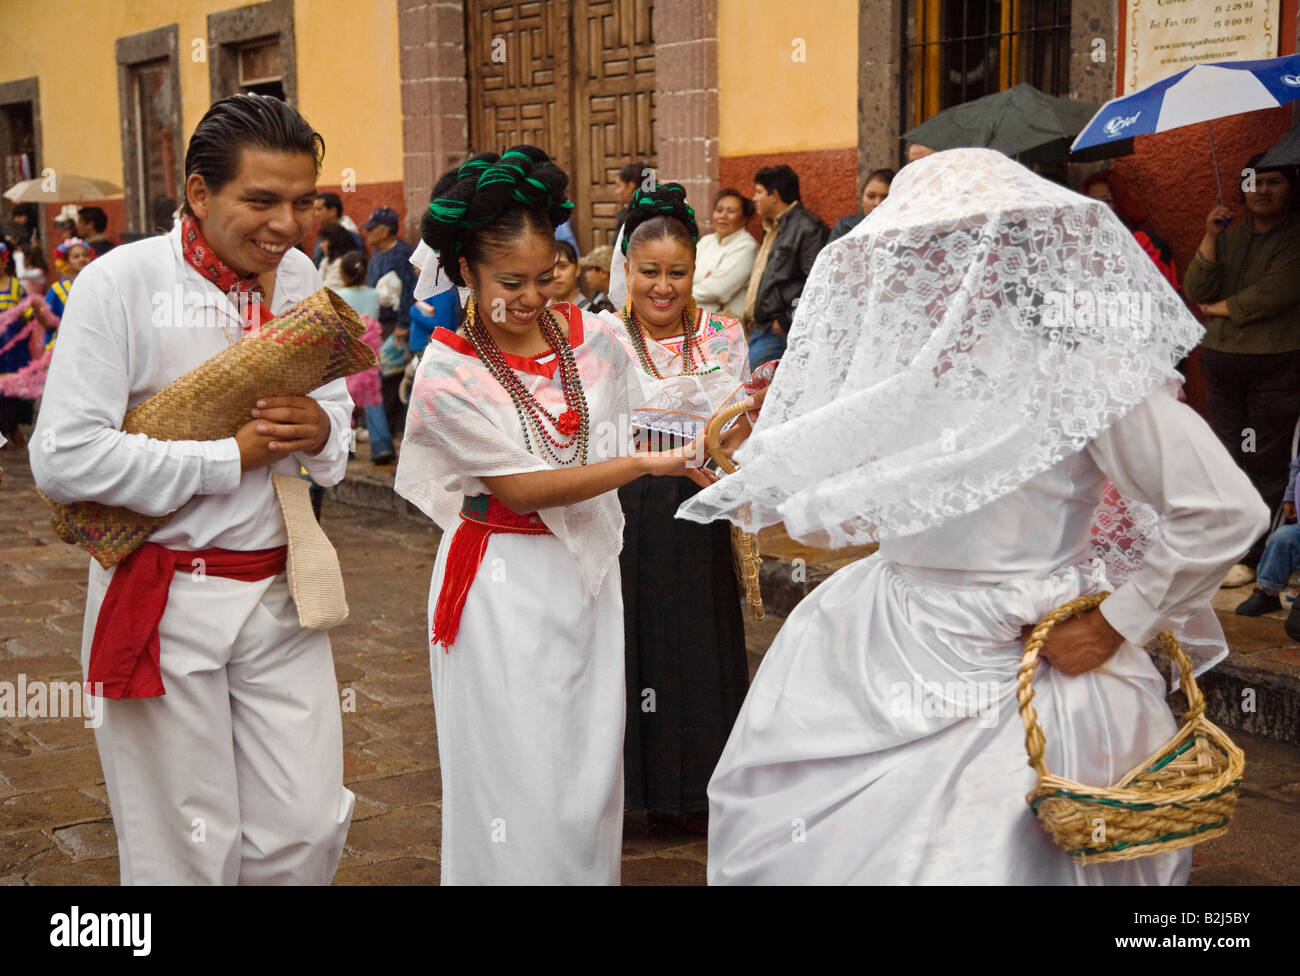 MEXICANS in PEASANT COSTUME WEDDING DRESS walk in the FESTIVAL DE SAN MIGUEL ARCHANGEL PARADE SAN MIGUEL DE ALLENDE MEXICO Stock Photo